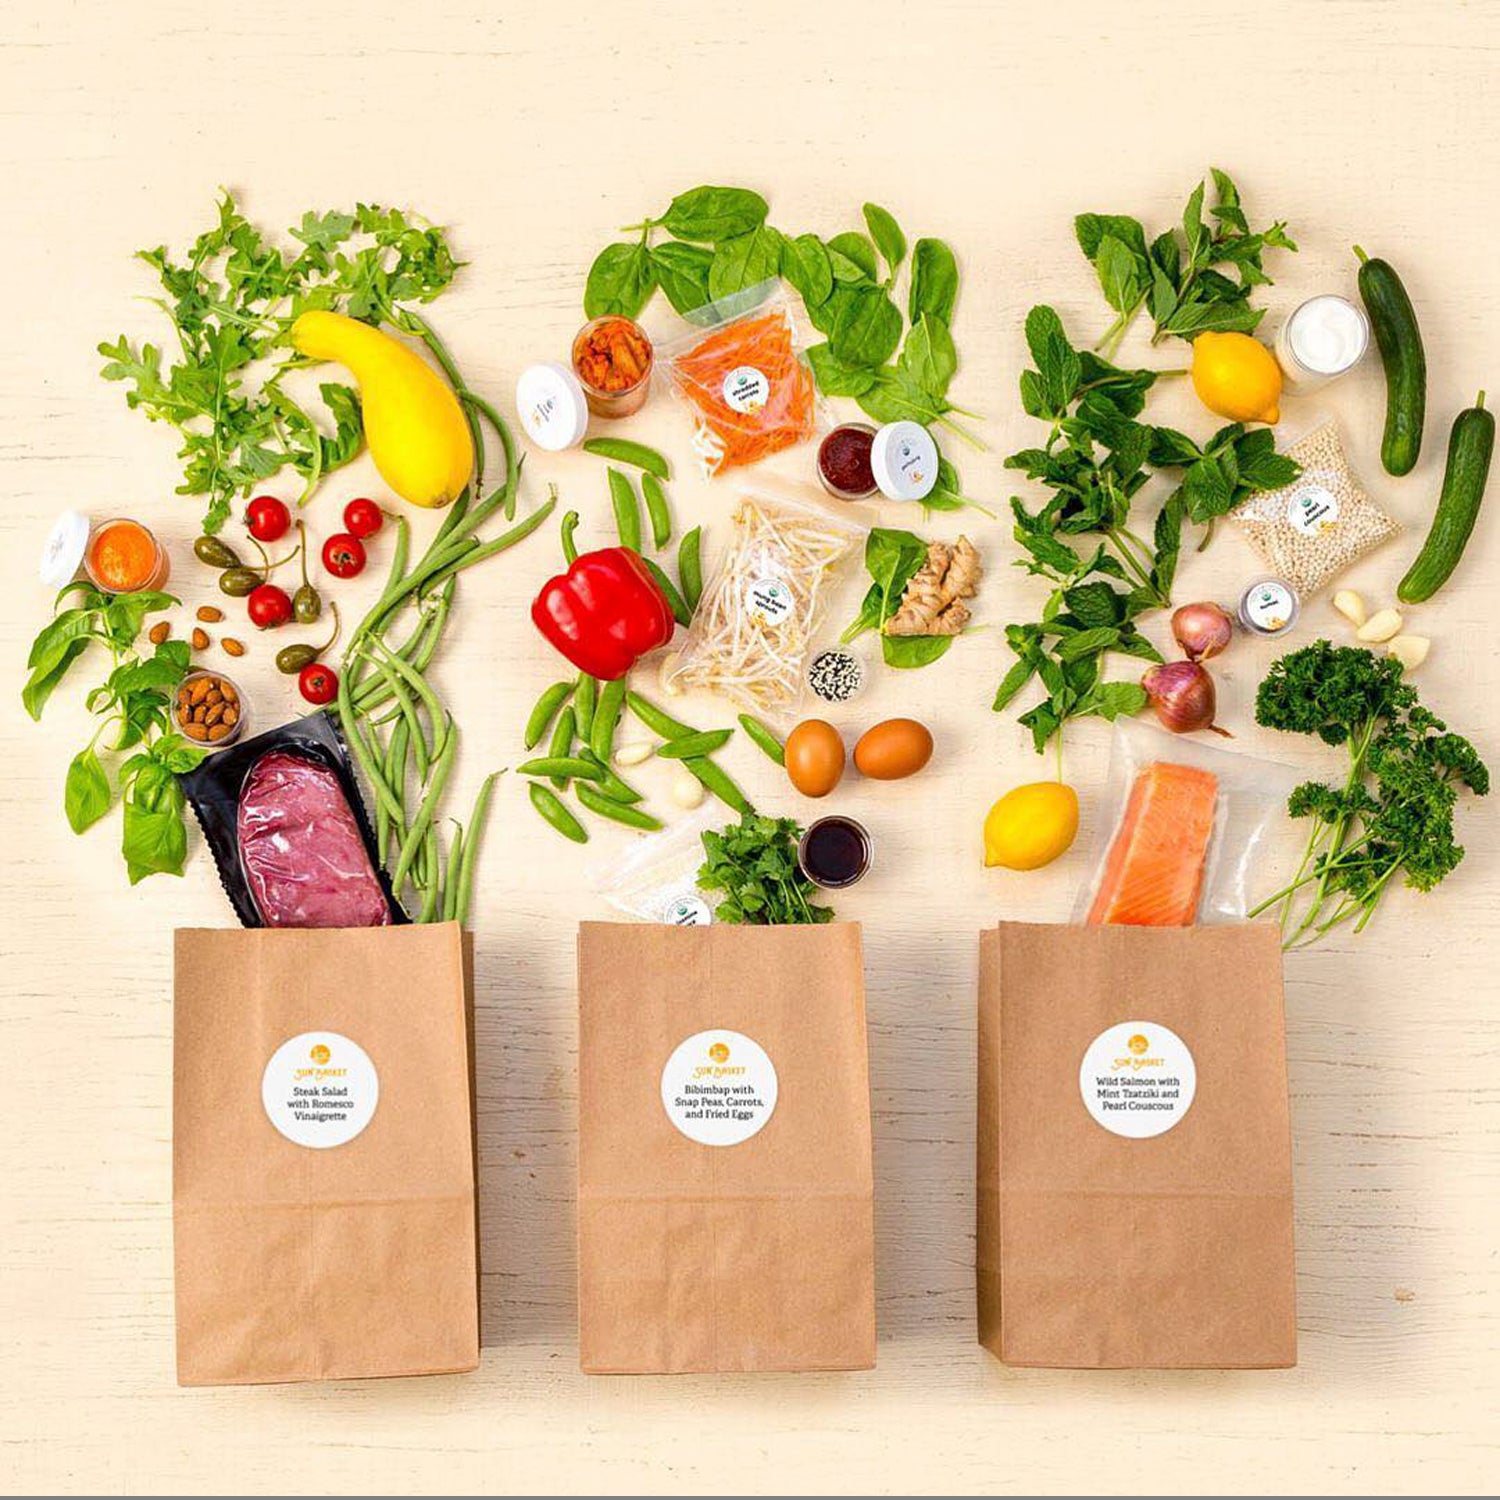 https://cdn.outsideonline.com/wp-content/uploads/2018/01/25/food-kit-boxes-vegetables_s.jpg